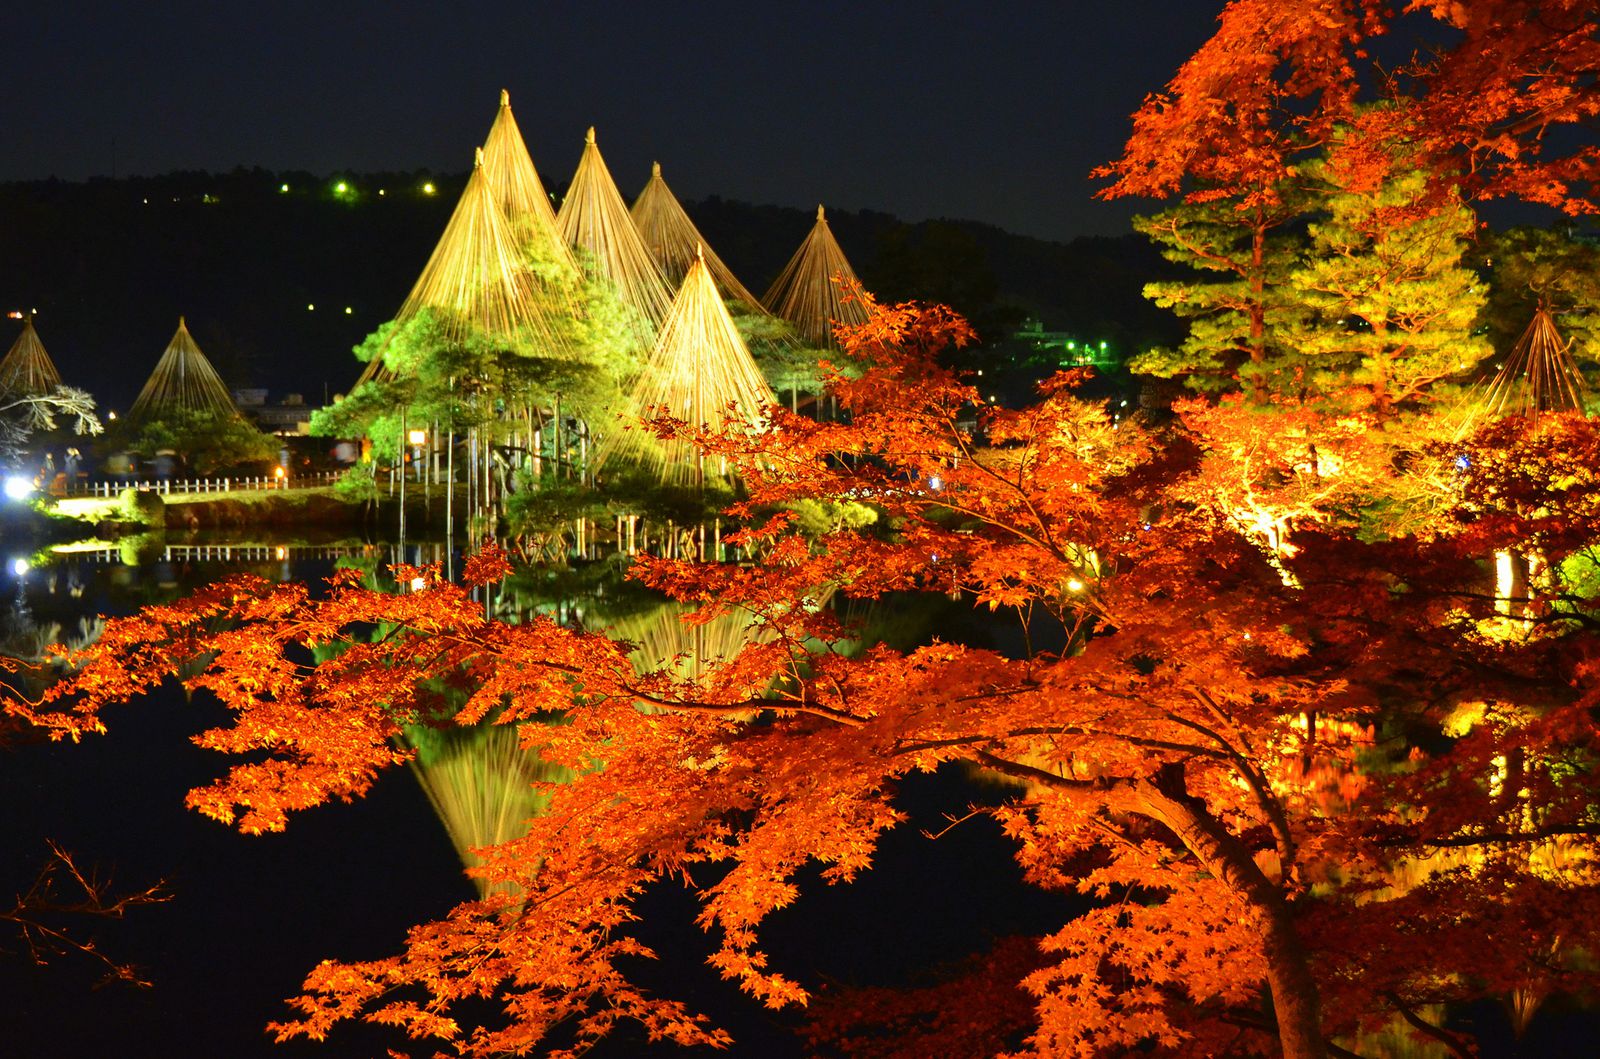 日本が誇る 美しき秋 金沢 兼六園 の紅葉が今年も美しすぎると話題に Retrip リトリップ